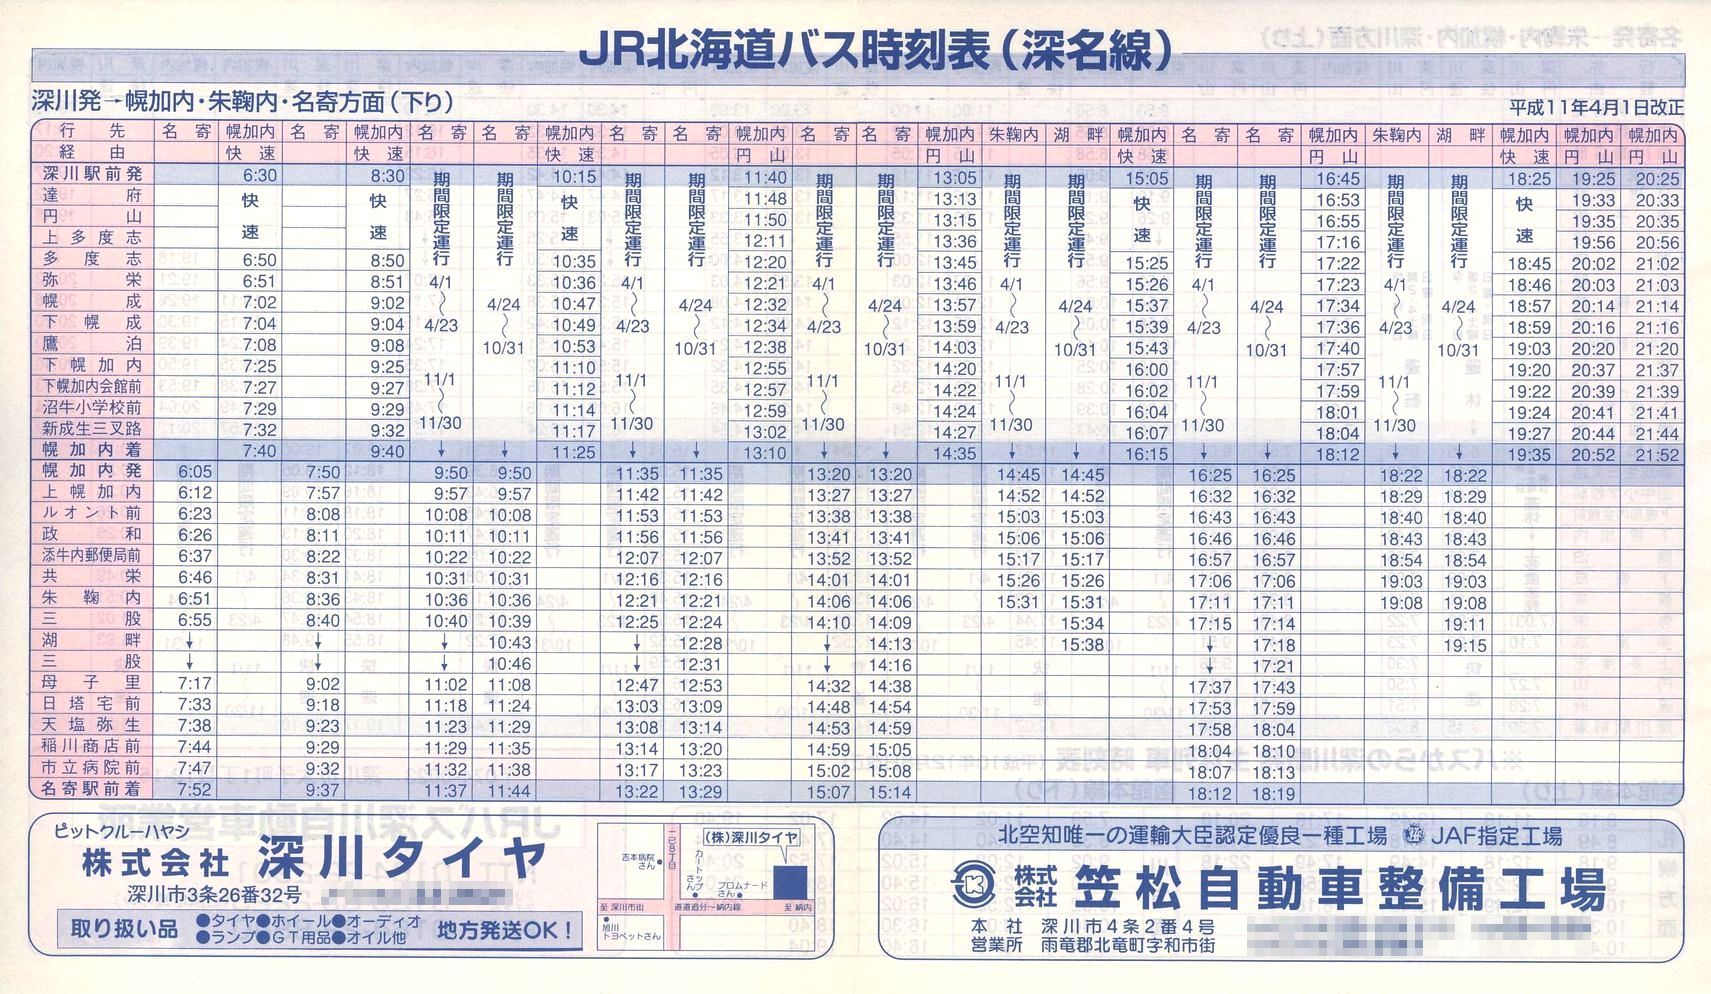 1999-04-01改正_ＪＲ北海道バス_深名線時刻表表面